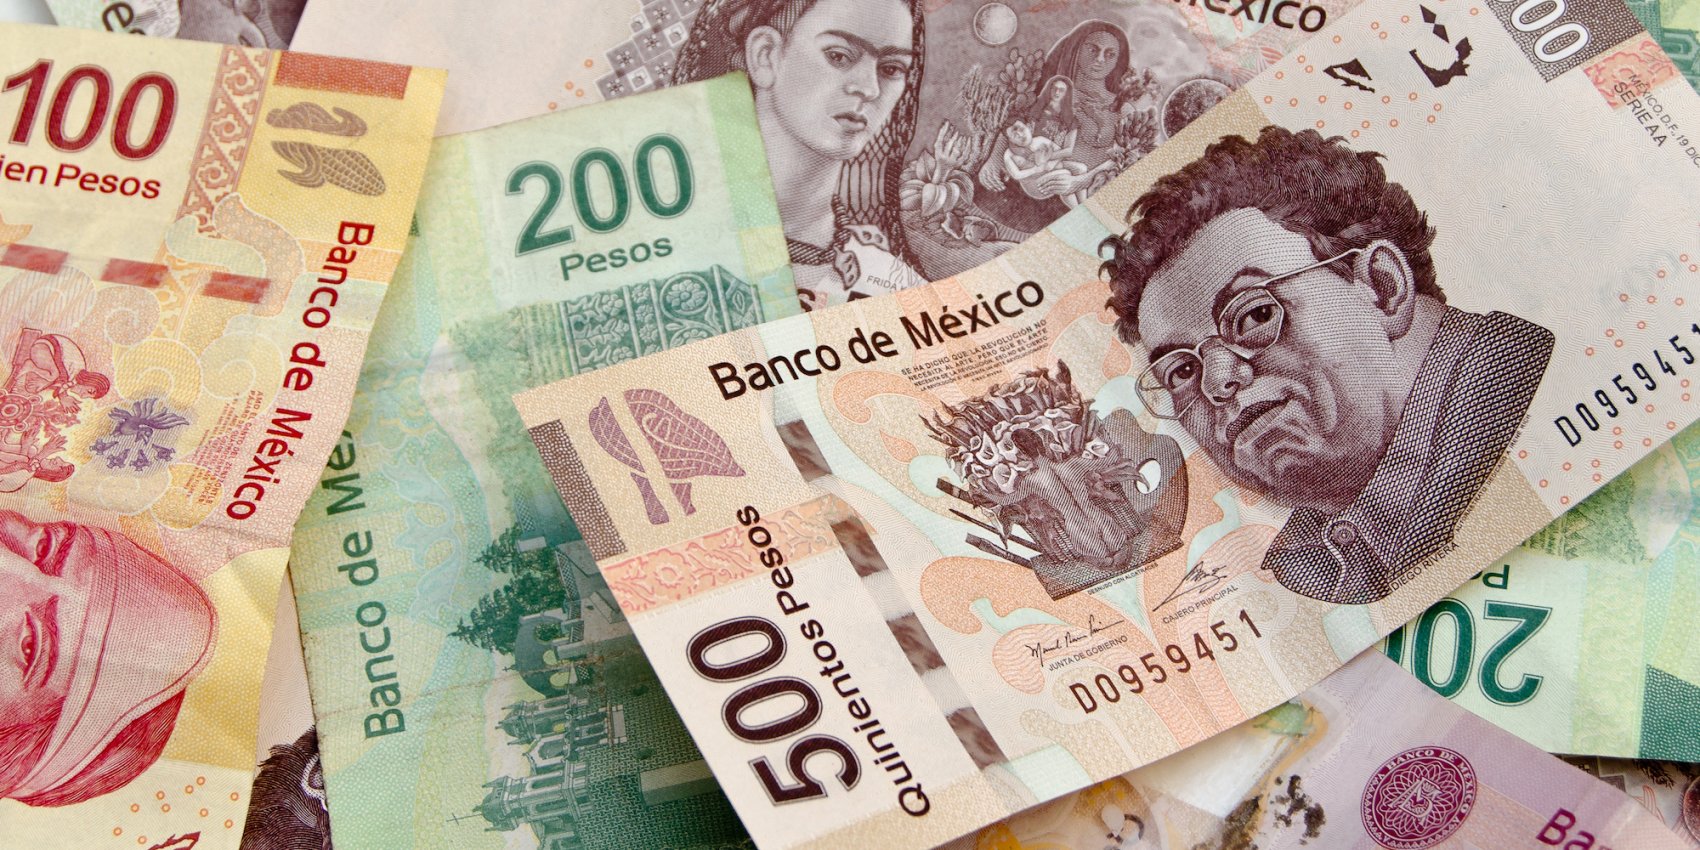 Mexican Pesos sprawled on a table